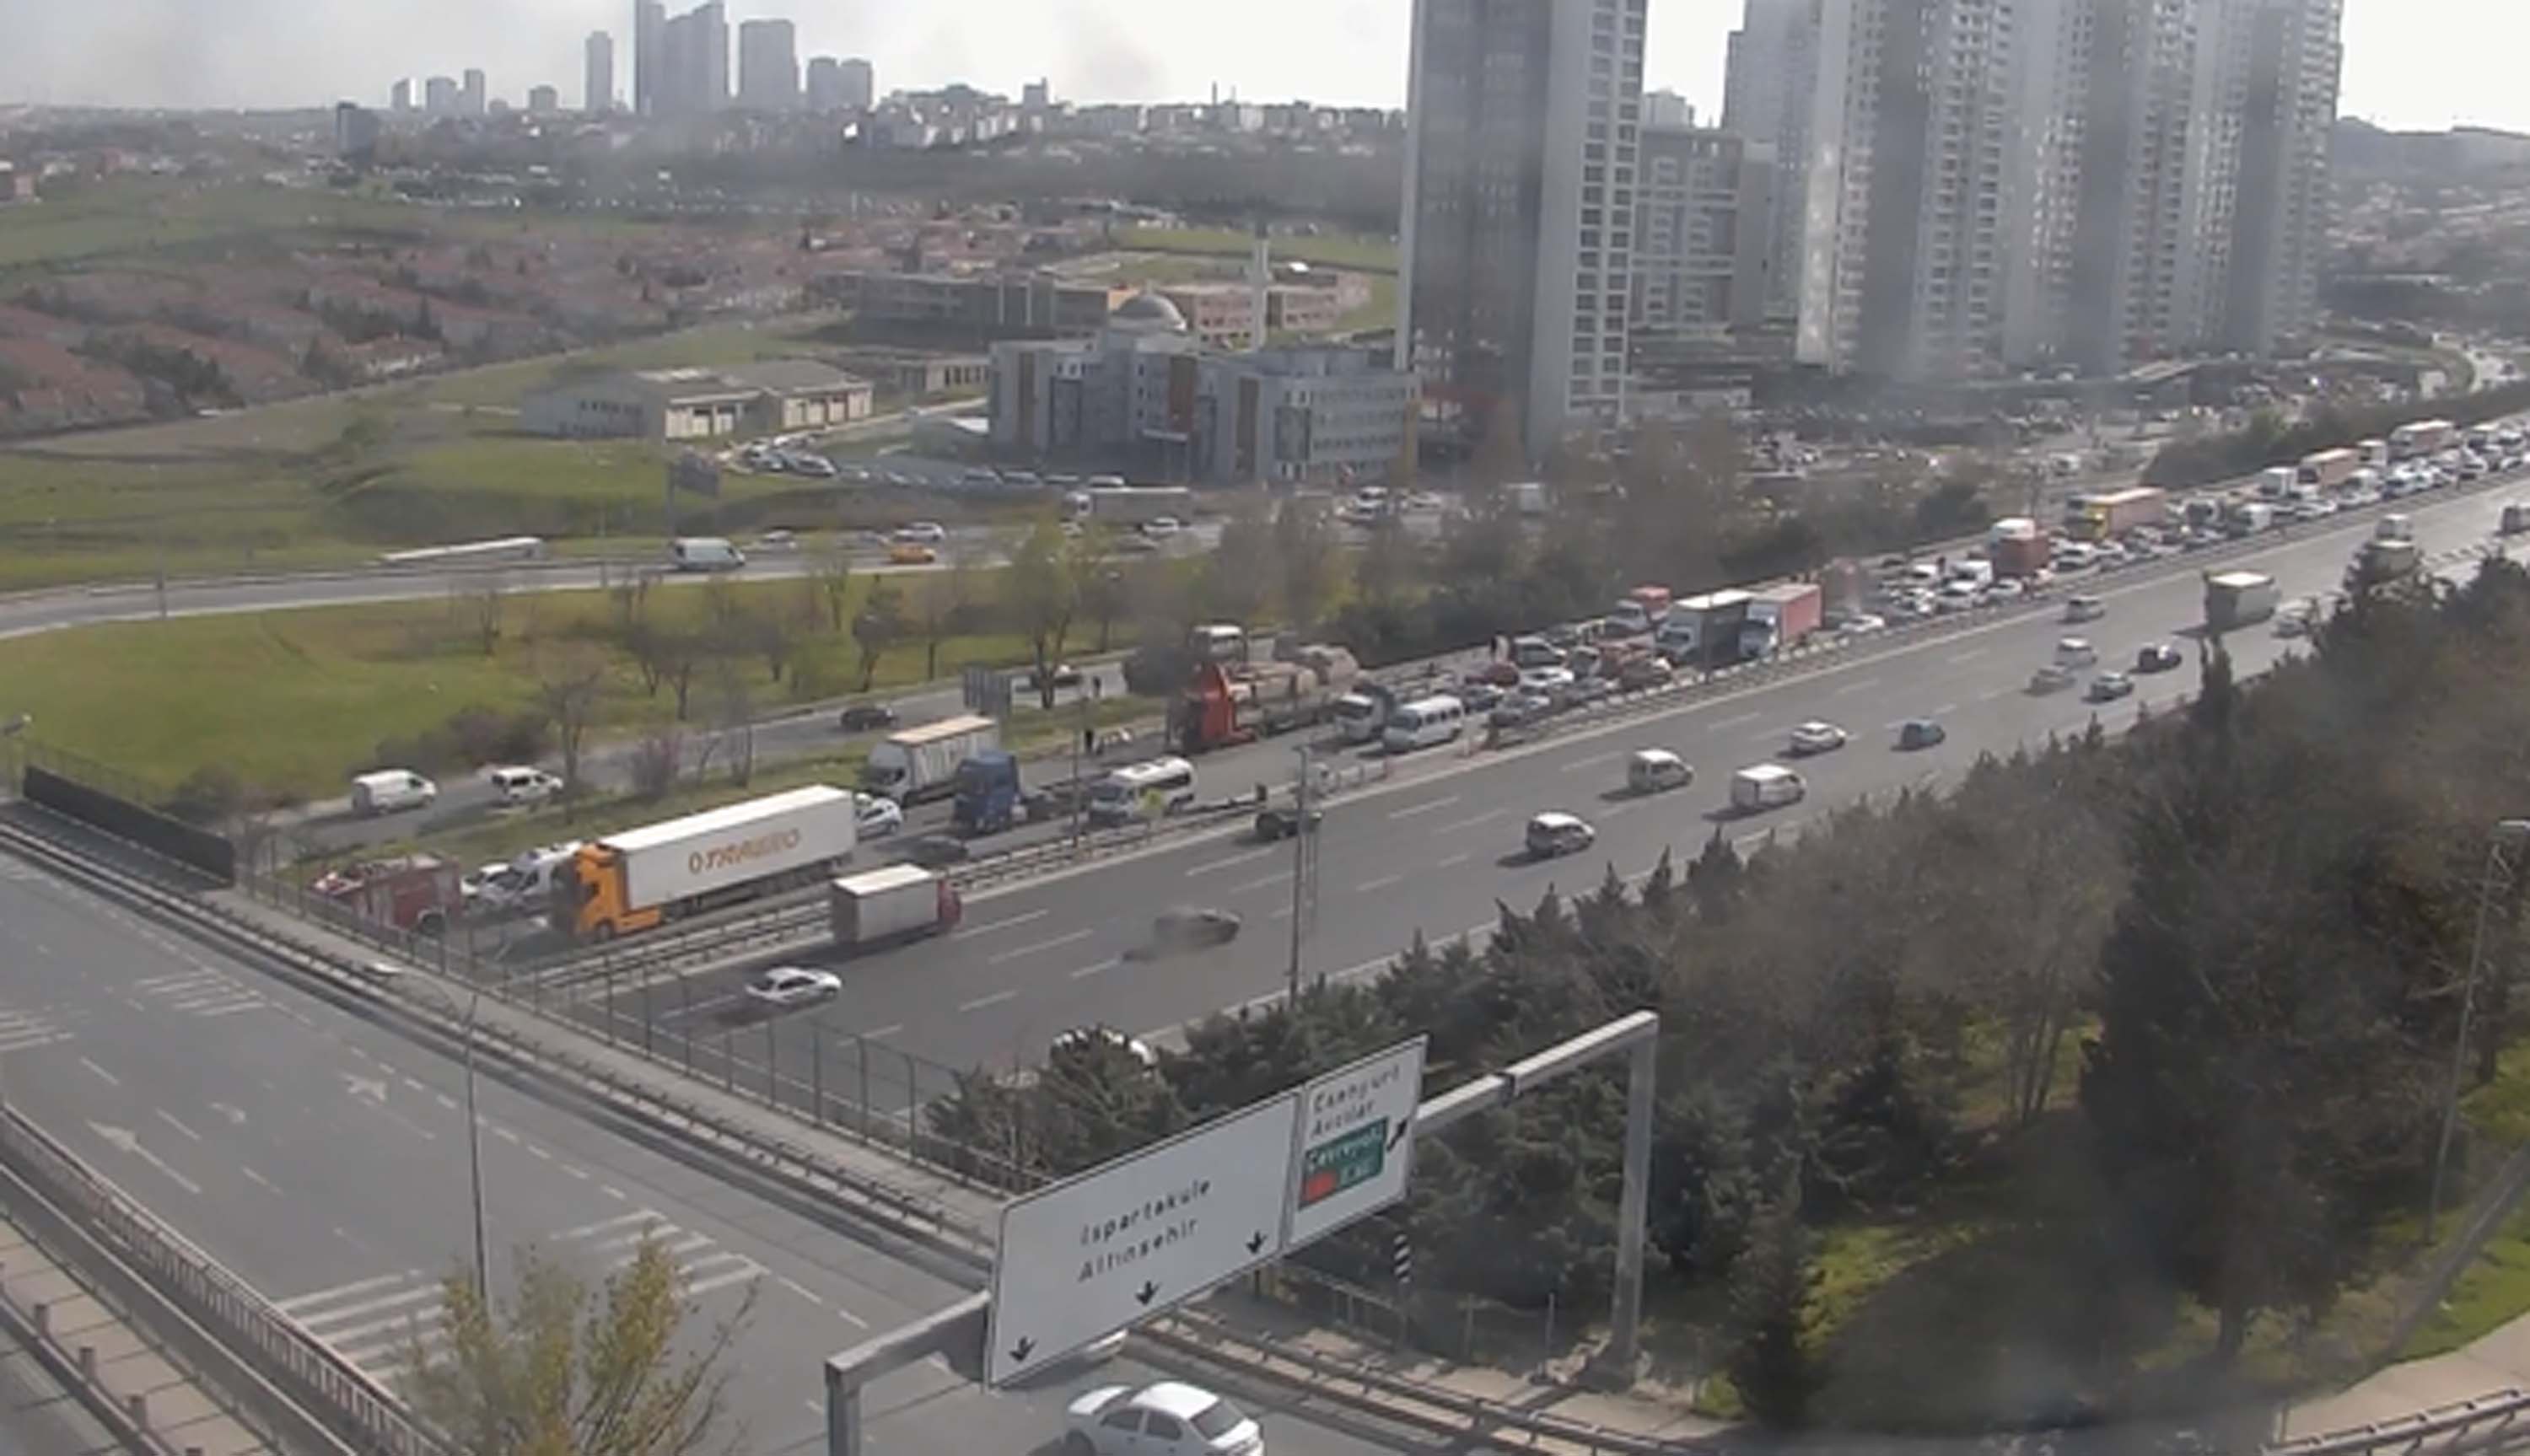 Son dakika! İstanbul'da zincirleme trafik kazası! Çok sayıda yaralı var!